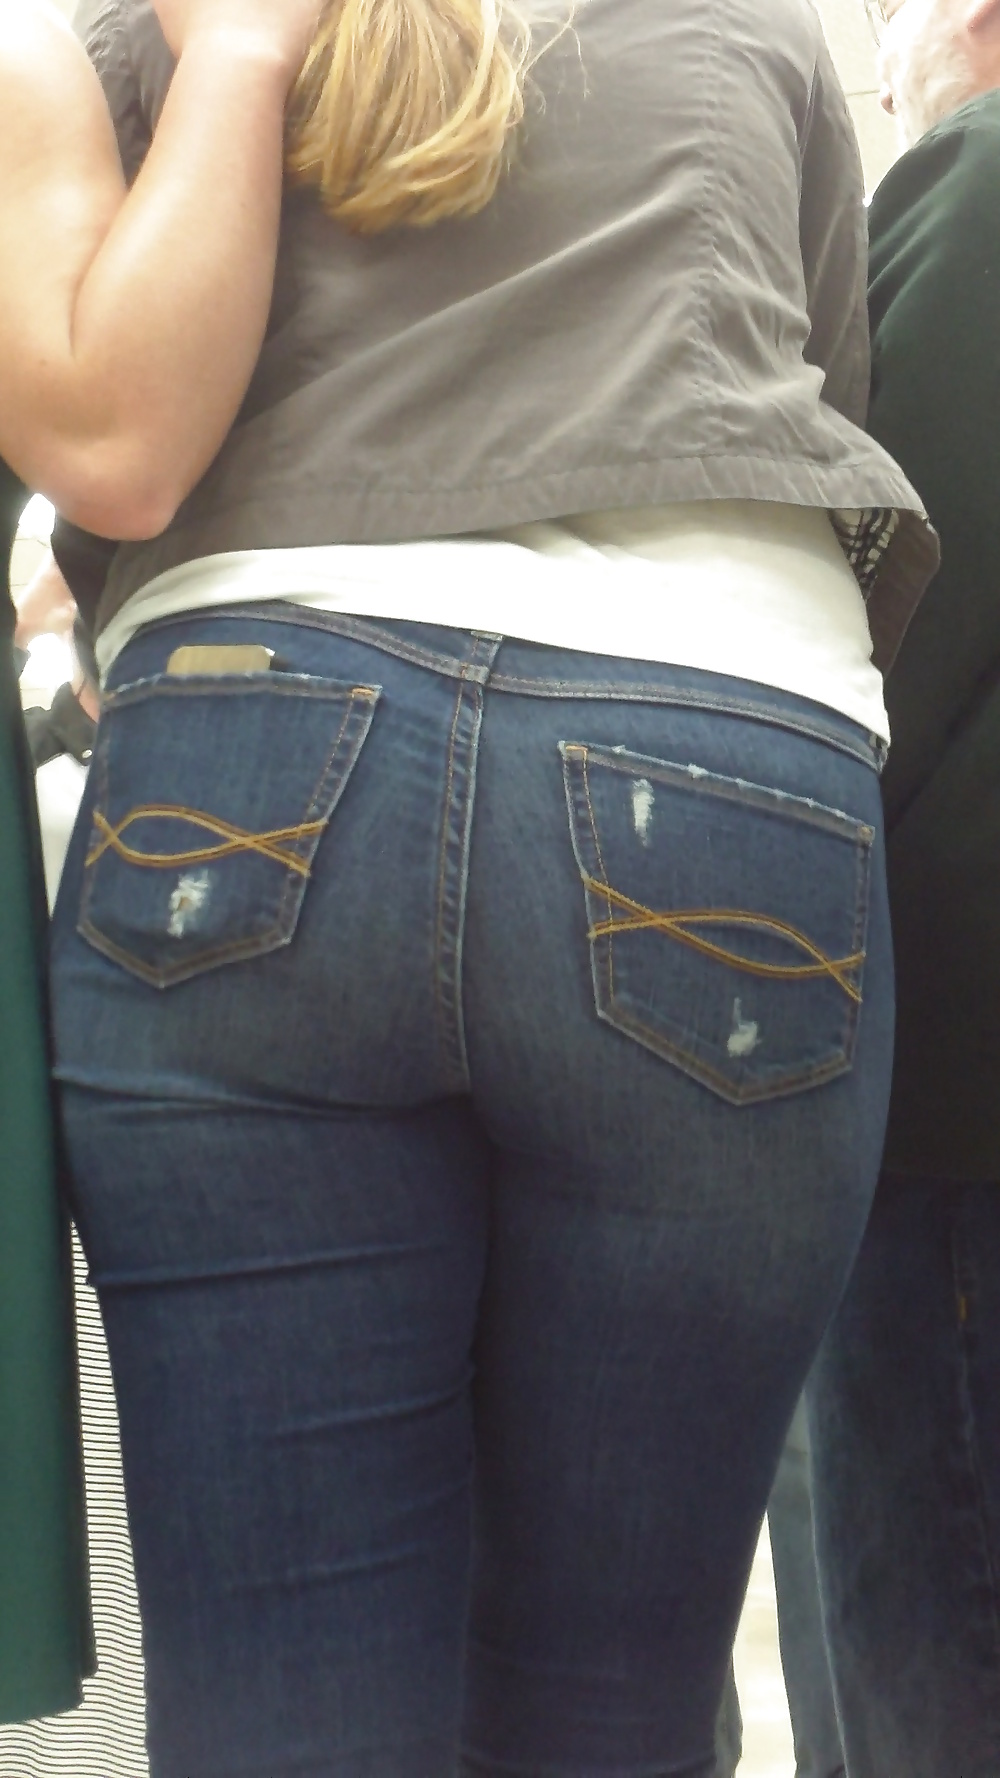 Populäre Jugendlich Mädchen Arsch & Hintern In Jeans Teil 3 #25399623